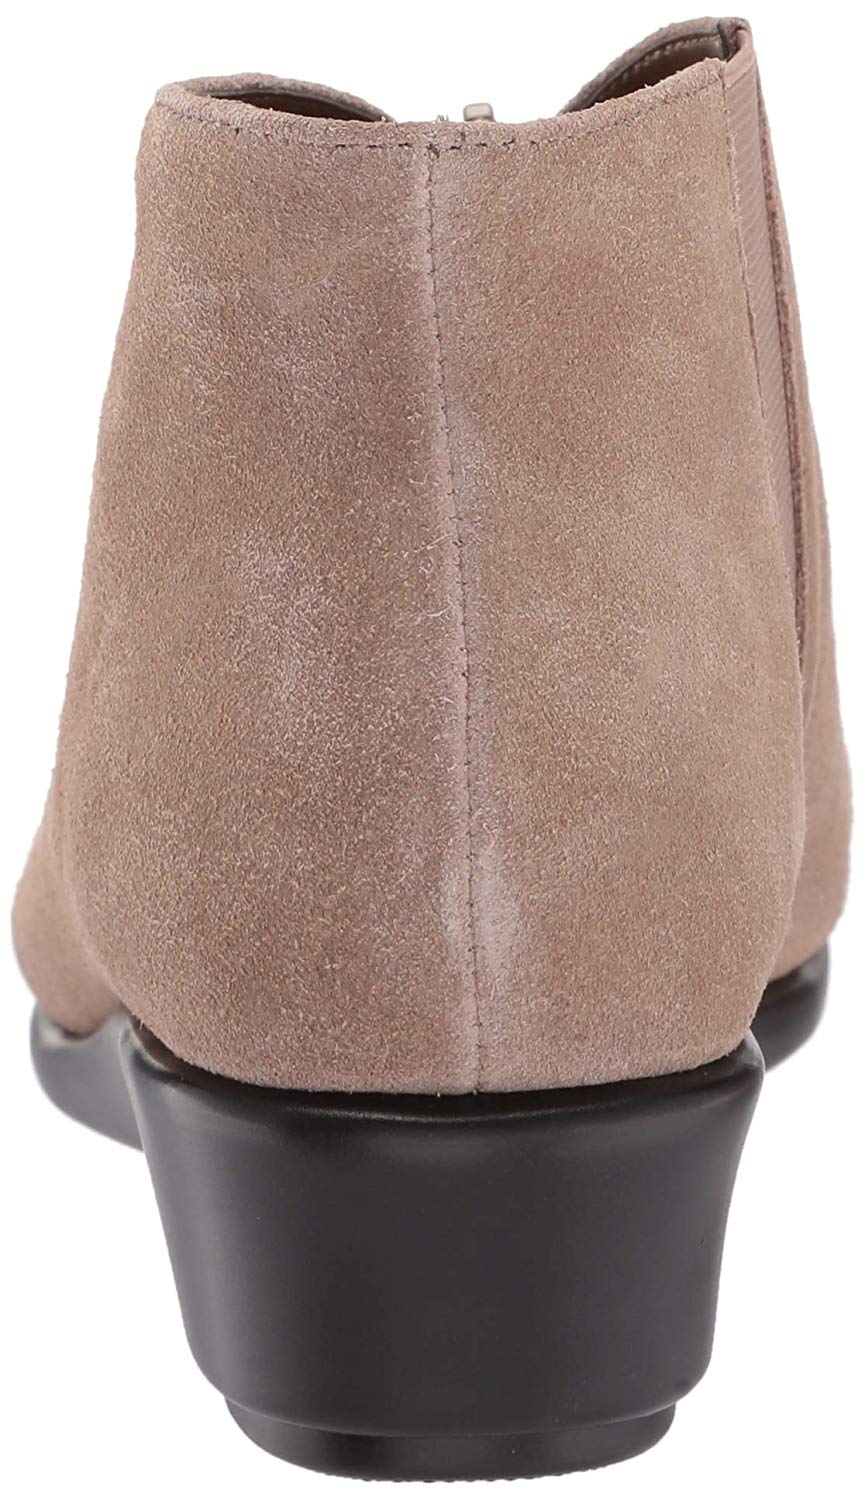 Aerosoles Women's Allowance Loafer, Tan Suede, Size 7.5 UsO1 | eBay